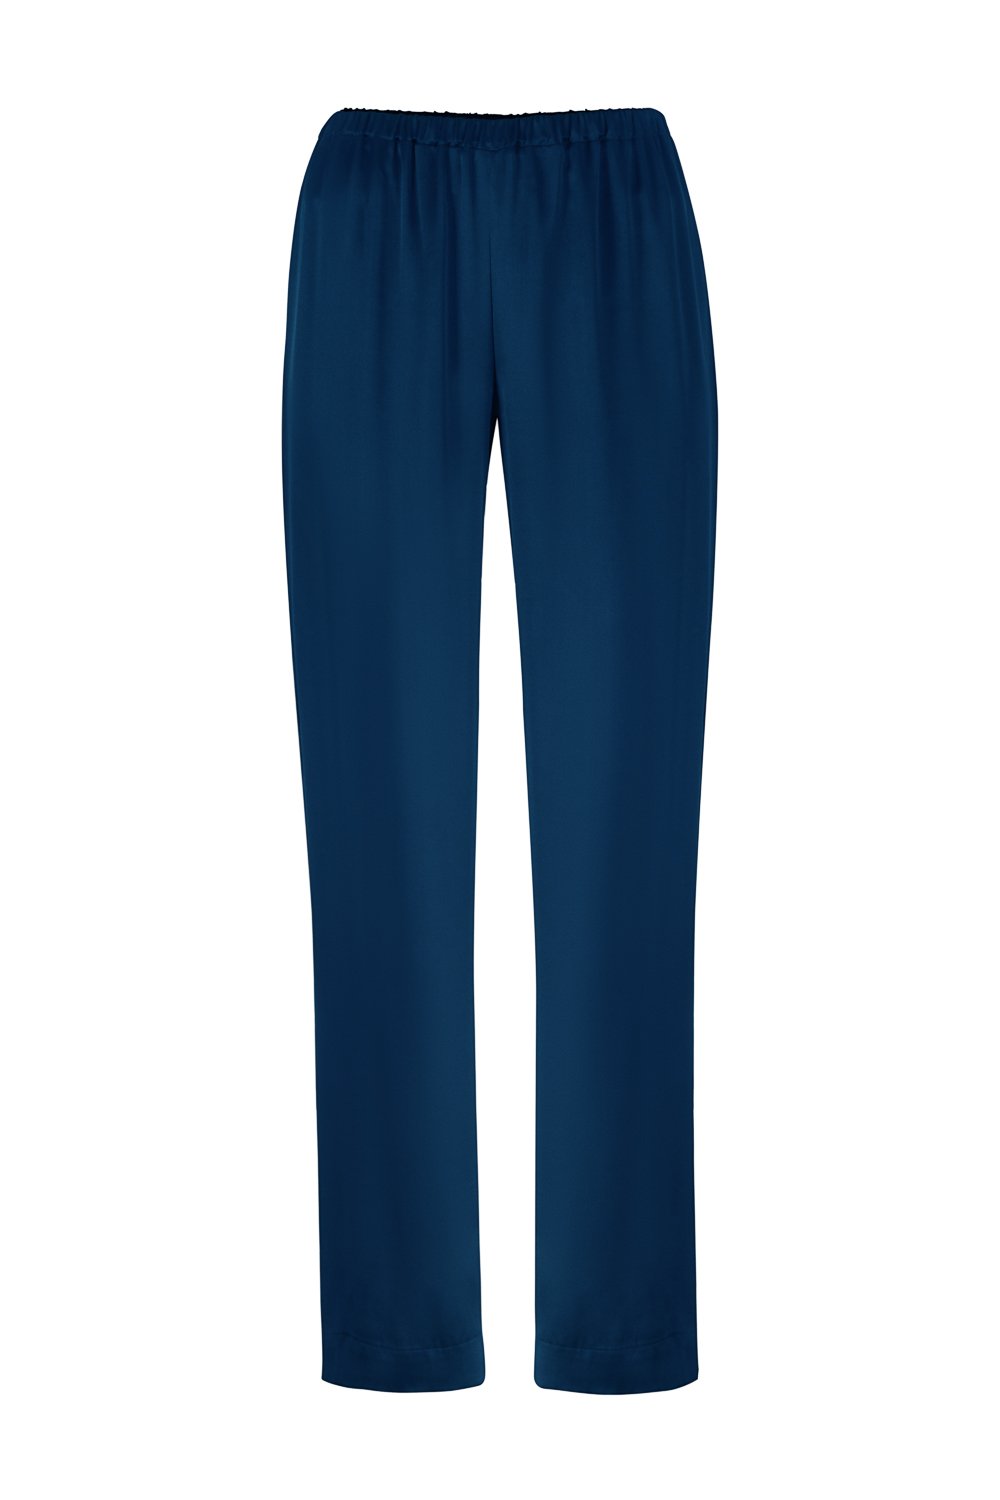 Wide Leg Silk Pants in Navy Blue